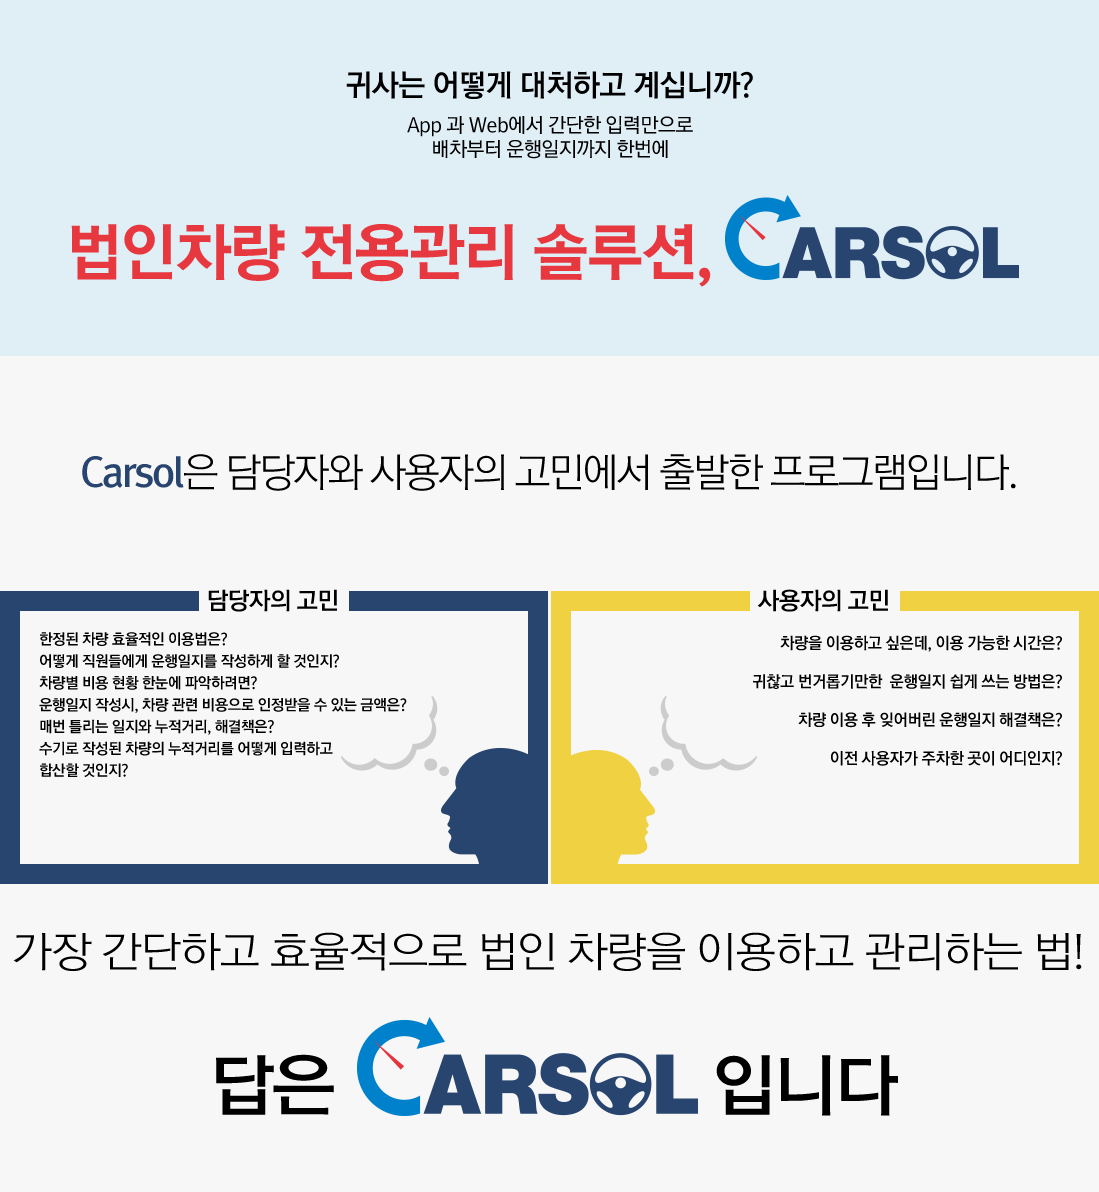 법인차량 전용관리 솔루션, CARSOL - CAROL은 담당자와 사용자의 고민에서 출발한 프로그램입니다. - 가장 간단하고 효율적으로 법인 차량을 이용하고 관리하는 법! 답은 CARSOL 입니다.